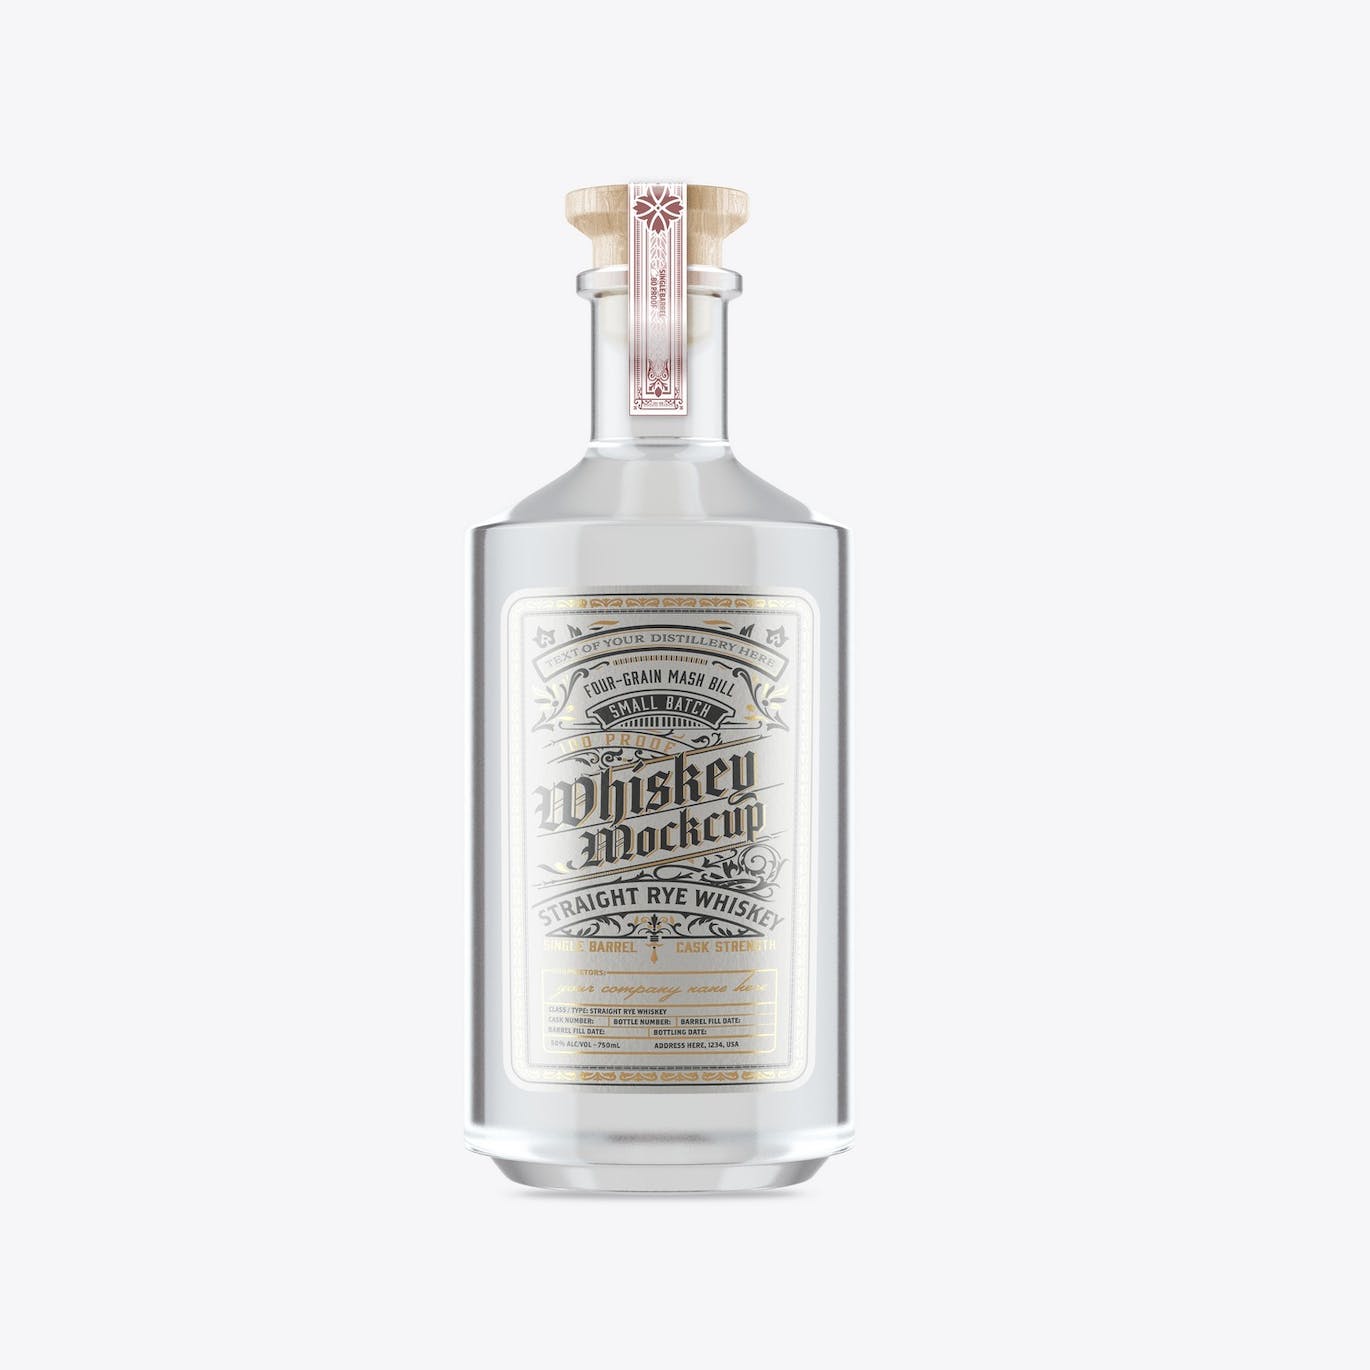 威士忌酒玻璃瓶包装设计样机 Pack Whiskey Liquor Glass Bottle Mockup 样机素材 第5张